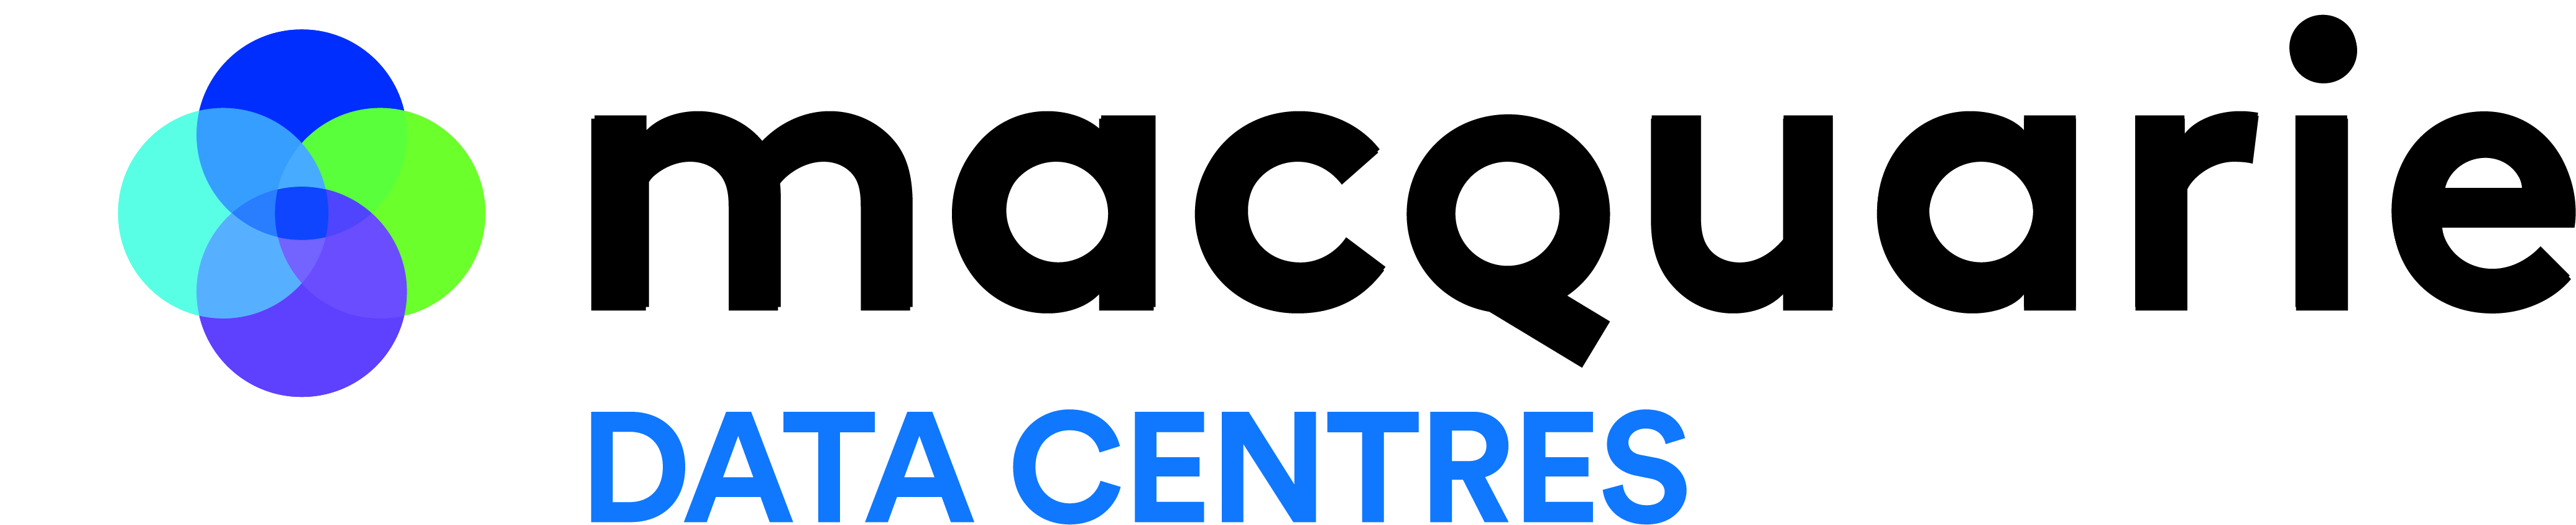 Macquarie-Data-Centres